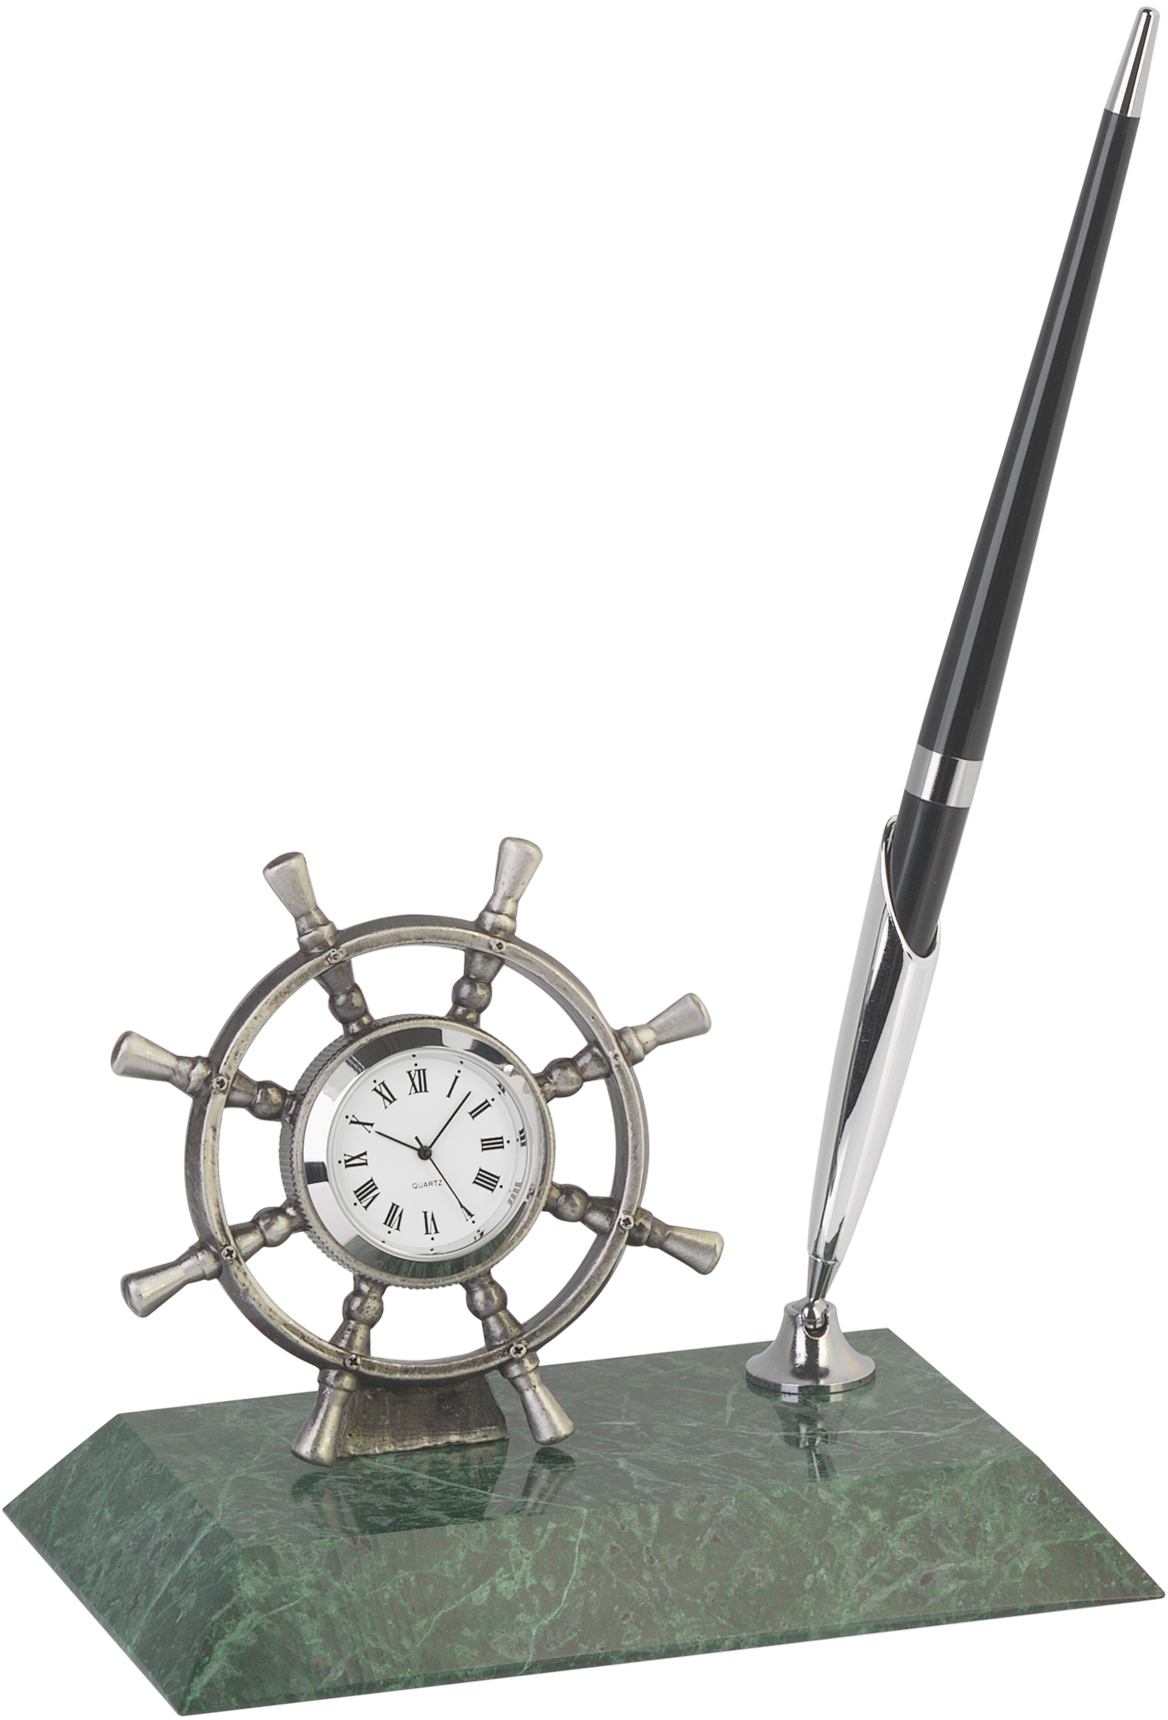 Артикул: E1825 — Подставка "Штурвал" с часами и ручкой